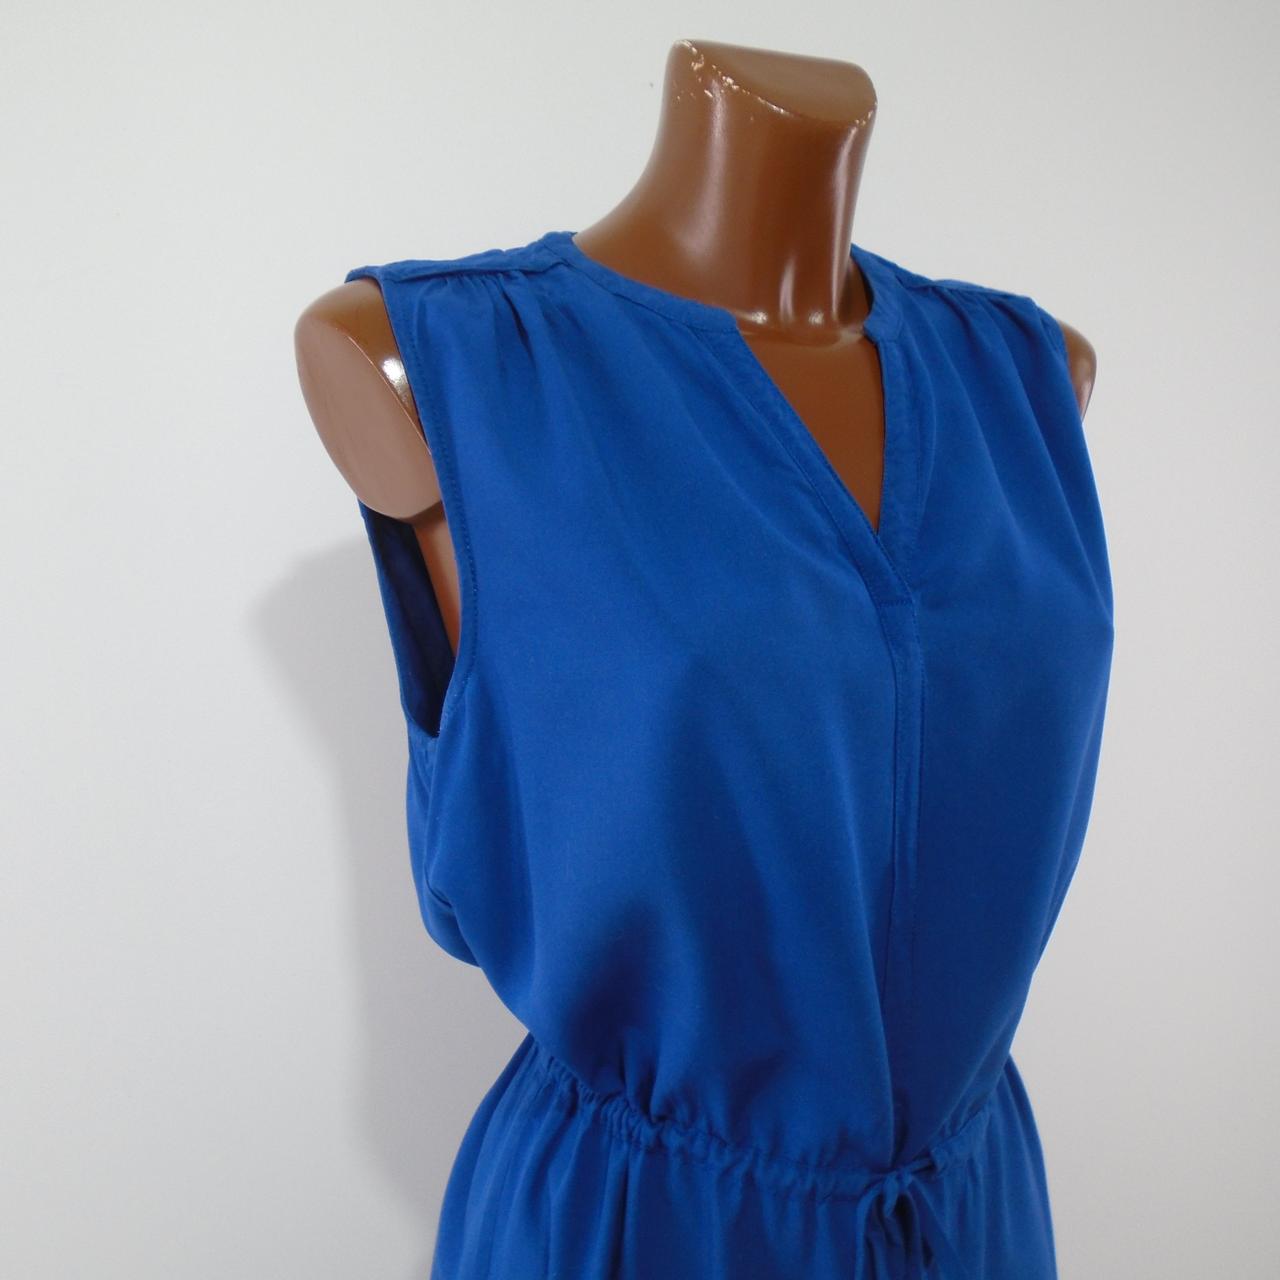 Women's Dress Tommy Hilfiger. Dark blue. L. Used. Good